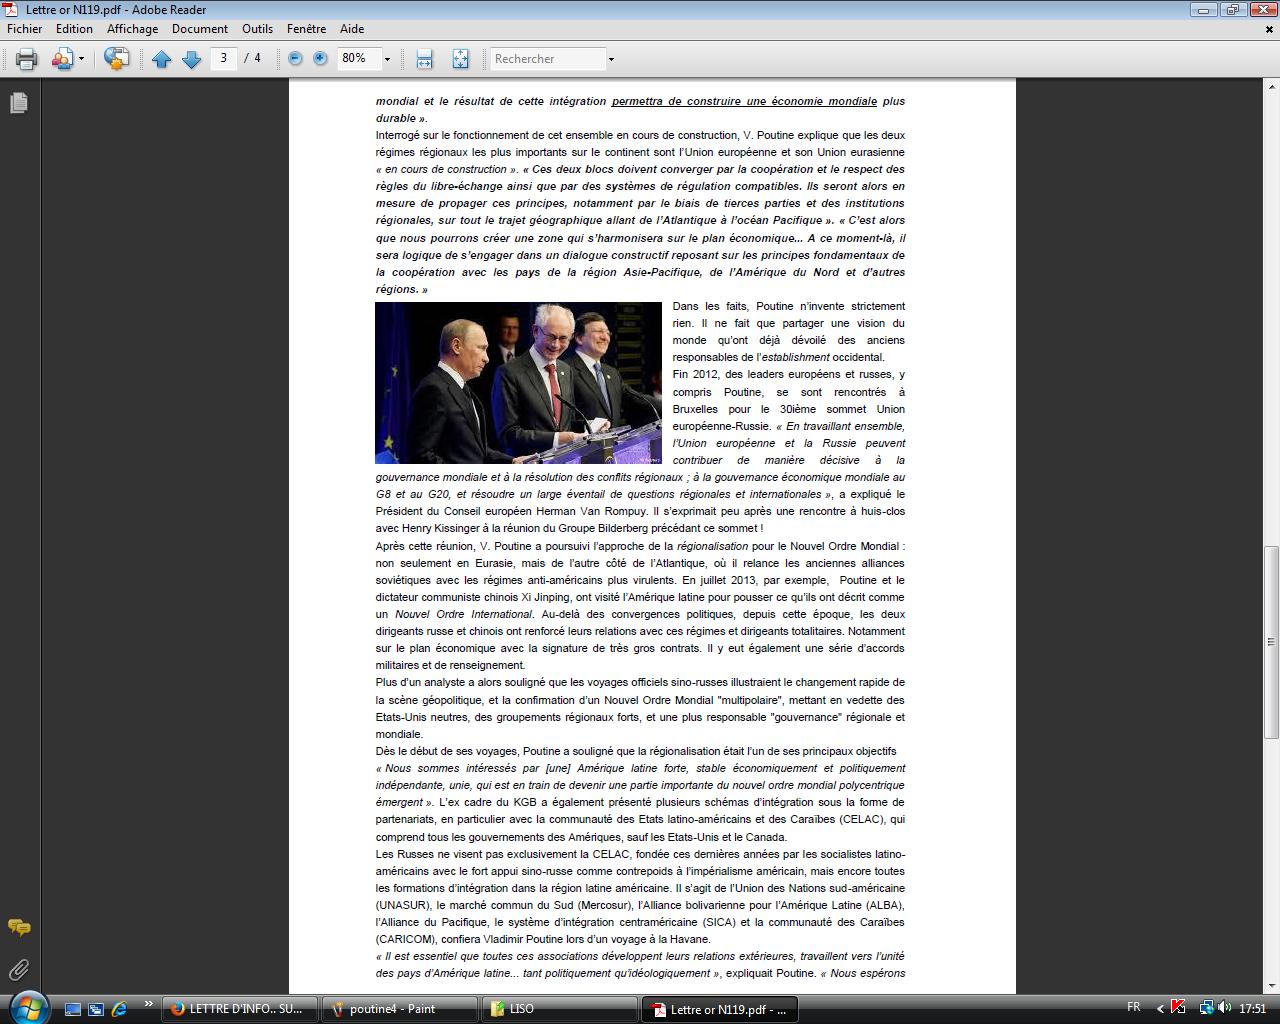 eurasie - Actualités Russie Chine BRICS Eurasie - imposture mondialiste pro Nouvel Ordre Mondial - Page 4 0510